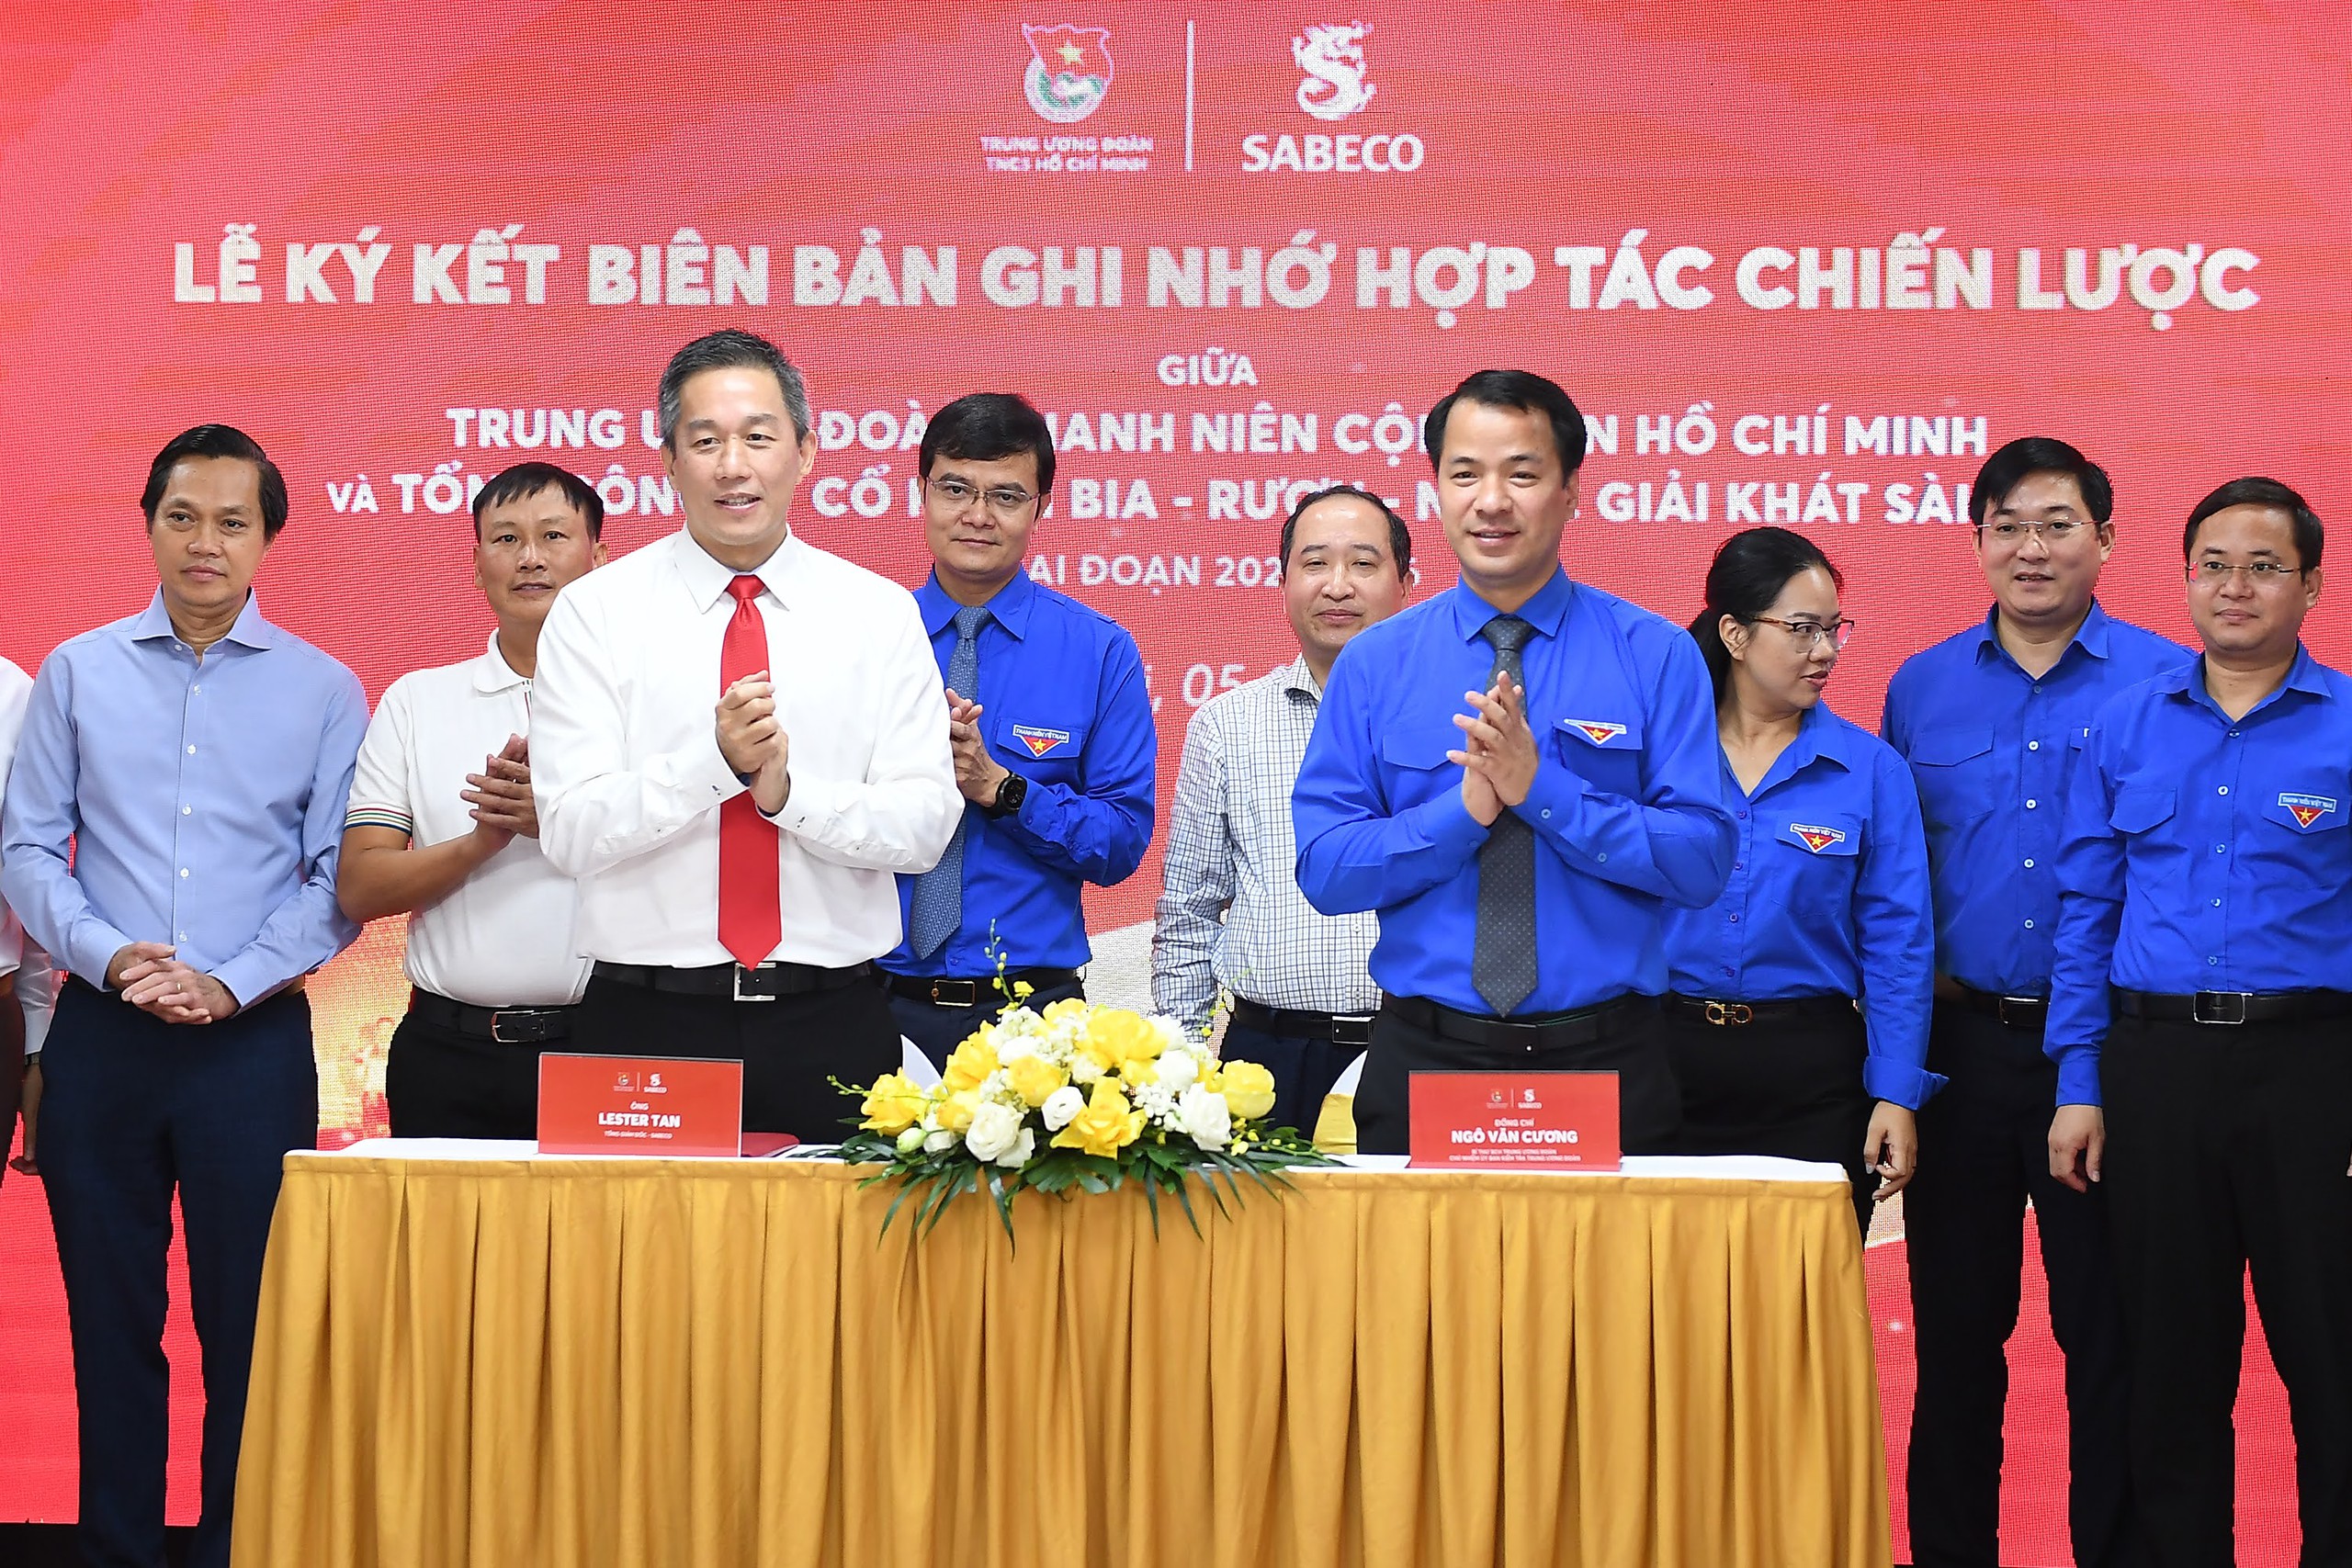 Trung ương Đoàn TNCS Hồ Chí Minh và Sabeco hợp tác  lắp đèn năng lượng mặt trời, trồng cây xanh ở 20 địa phương- Ảnh 3.